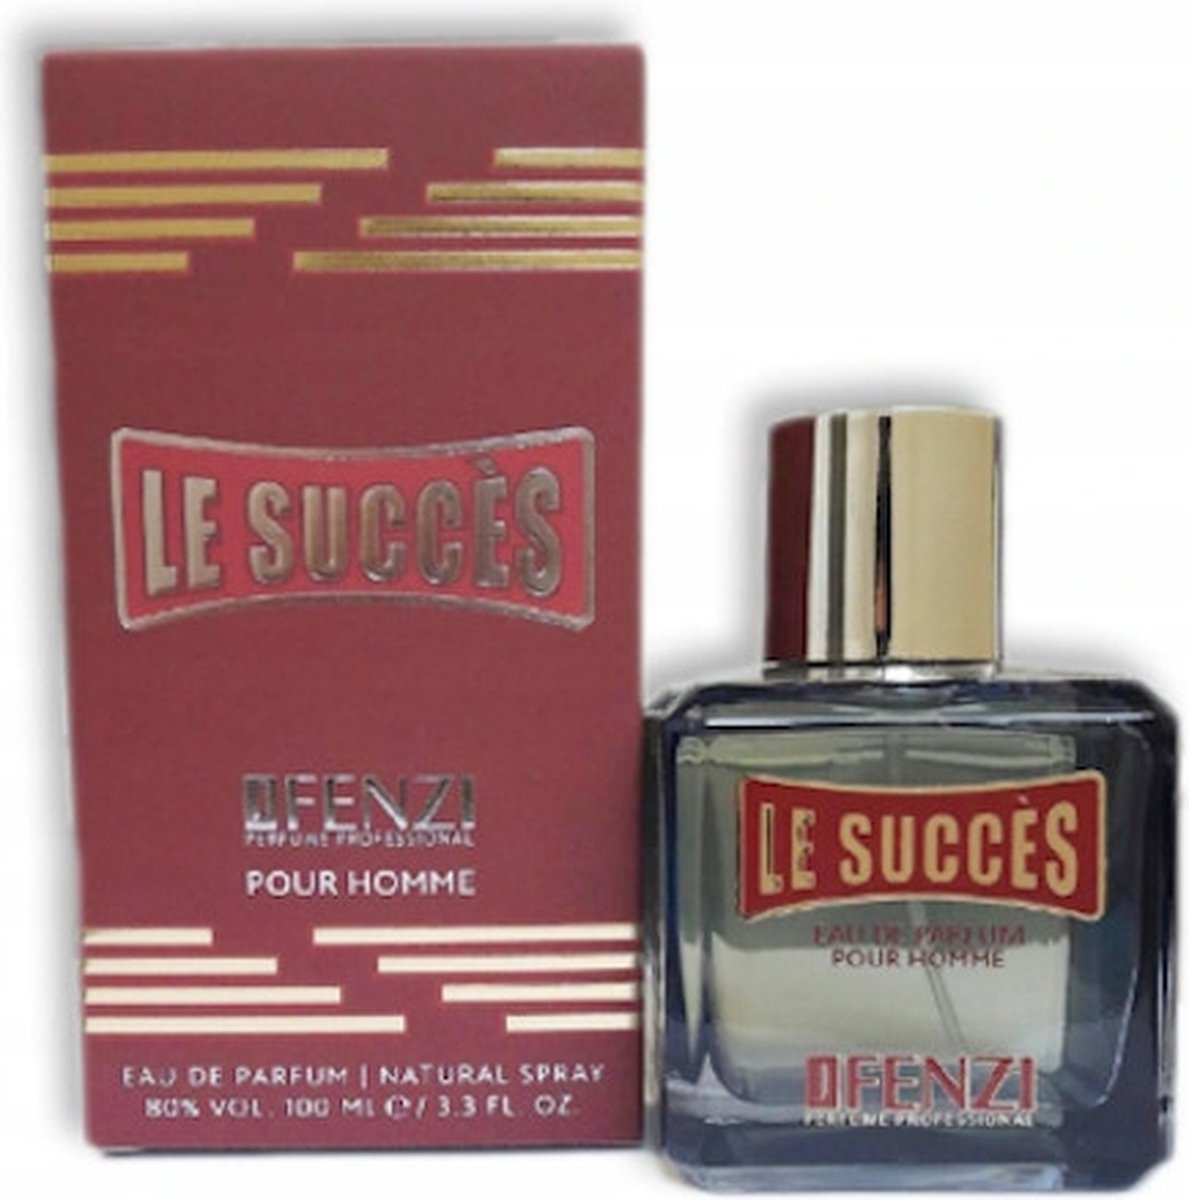 Merk geuren voor een eerlijke prijs - JFenzi - Eau de Parfum - Le Succes - 100ml - 80% ✮✮✮✮✮